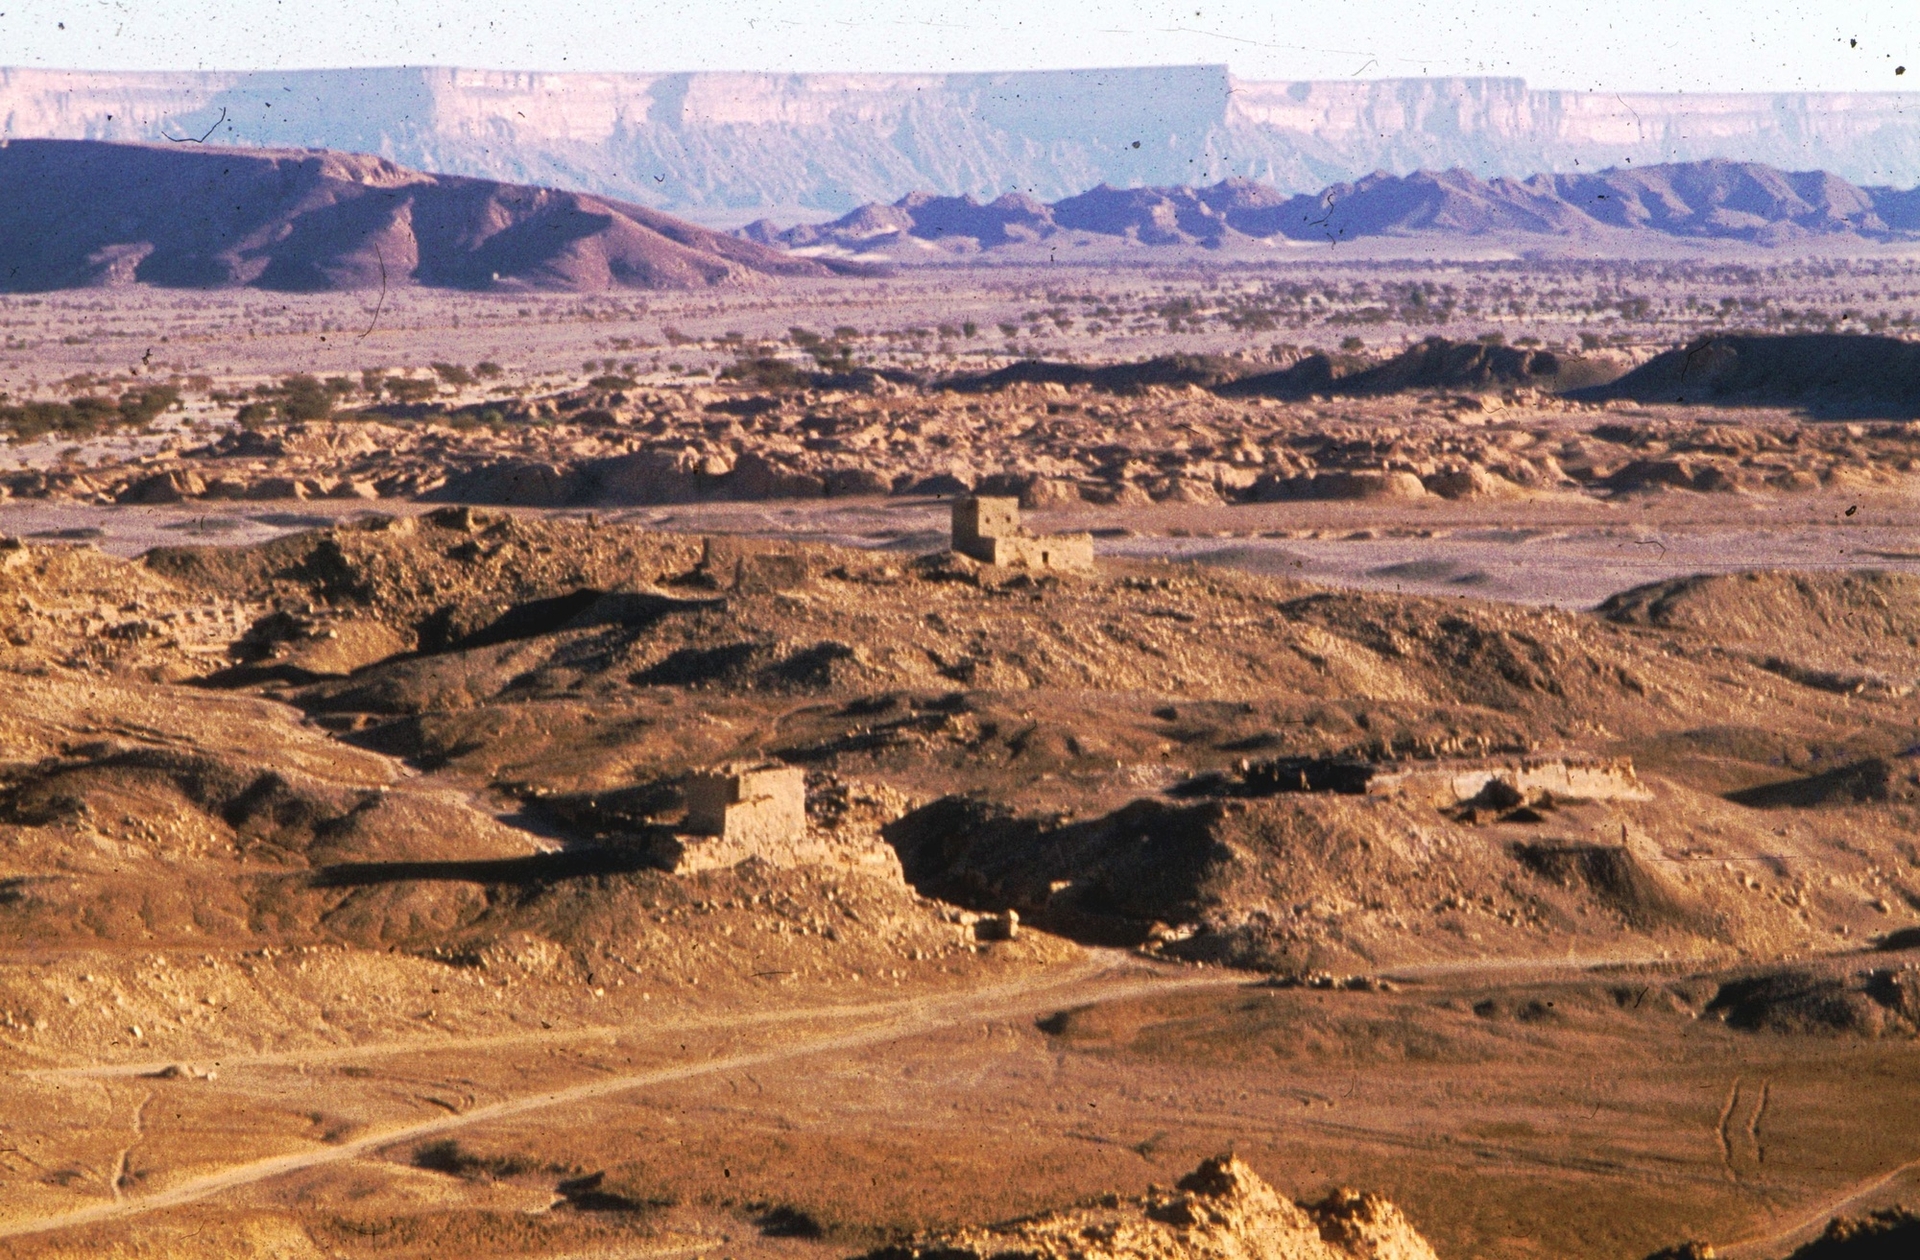 Vue générale de la ville antique de Shabwa, capitale du Hadramawt, Yémen. © Mission archéologique de Shabwa. Cl. Jean-François Breton